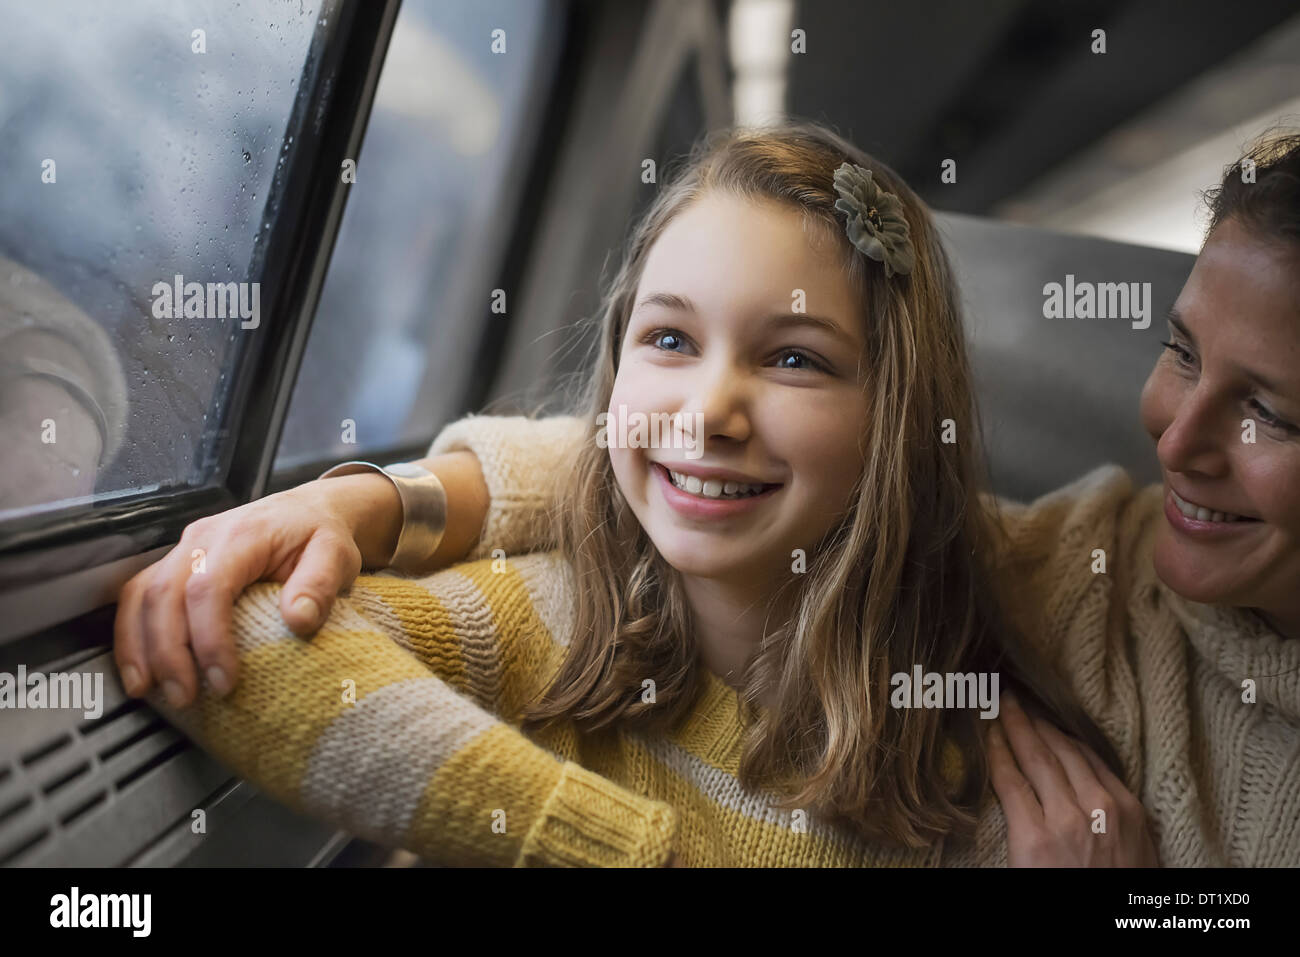 Un homme et une jeune fille assise à côté de la fenêtre, dans un train à la campagne à l'excitation en souriant Banque D'Images